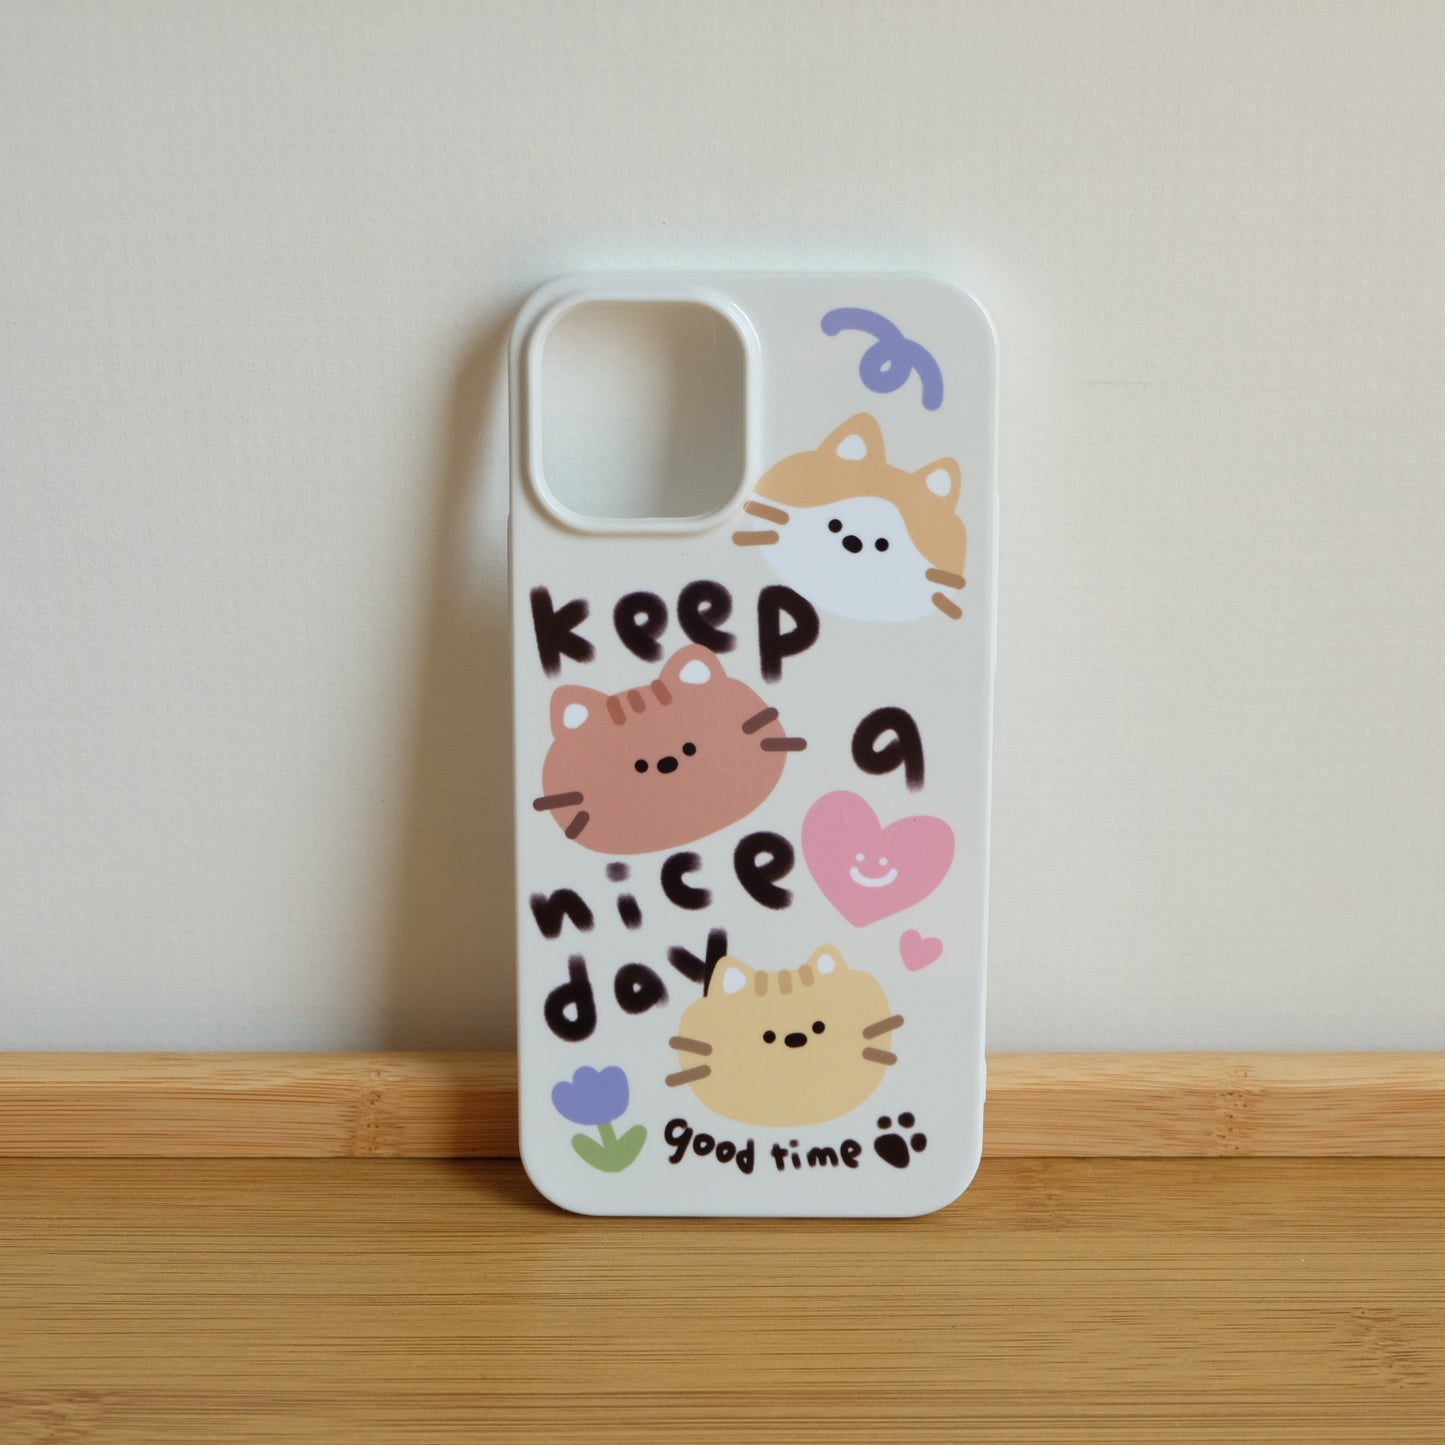 Keep a nice day cute kittens phone case | Three Fleas